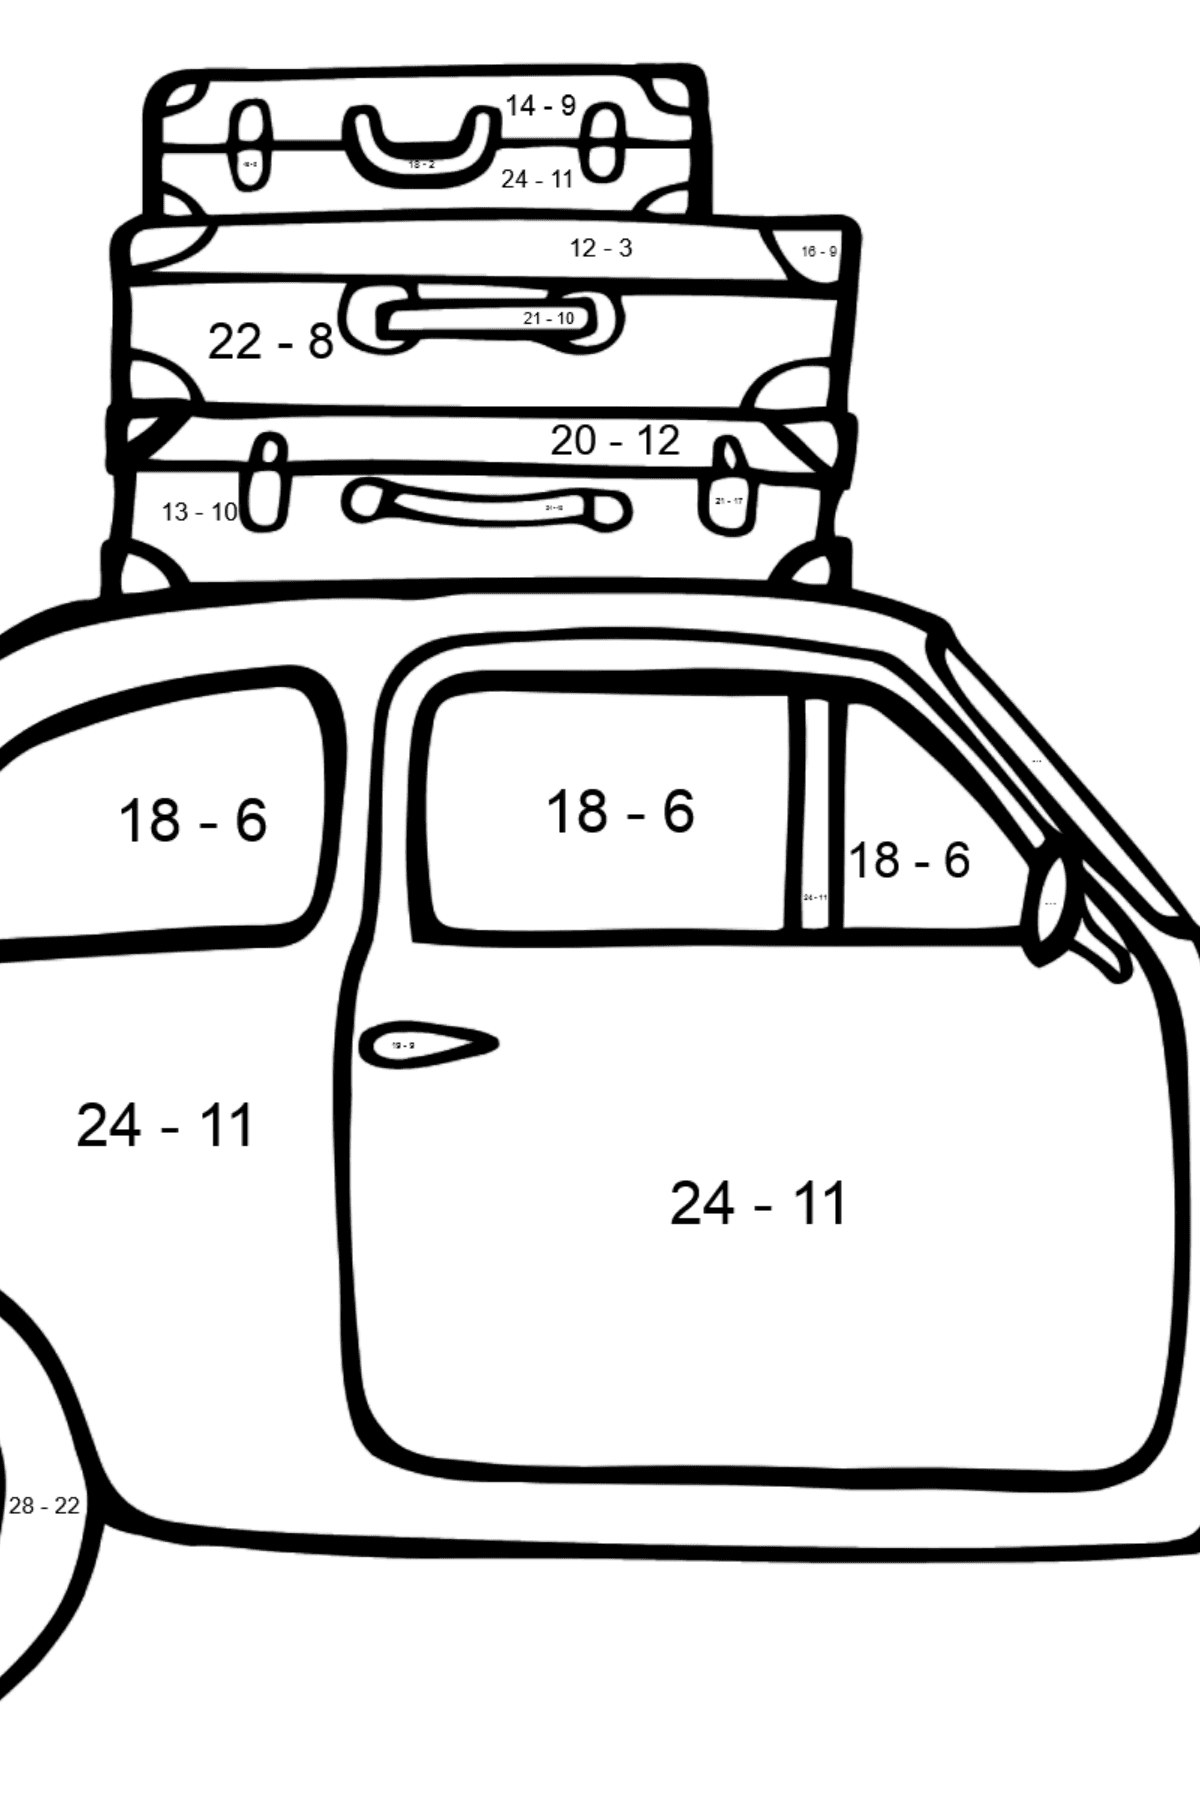 Fiat 500 Auto Ausmalbild - Mathe Ausmalbilder - Subtraktion für Kinder